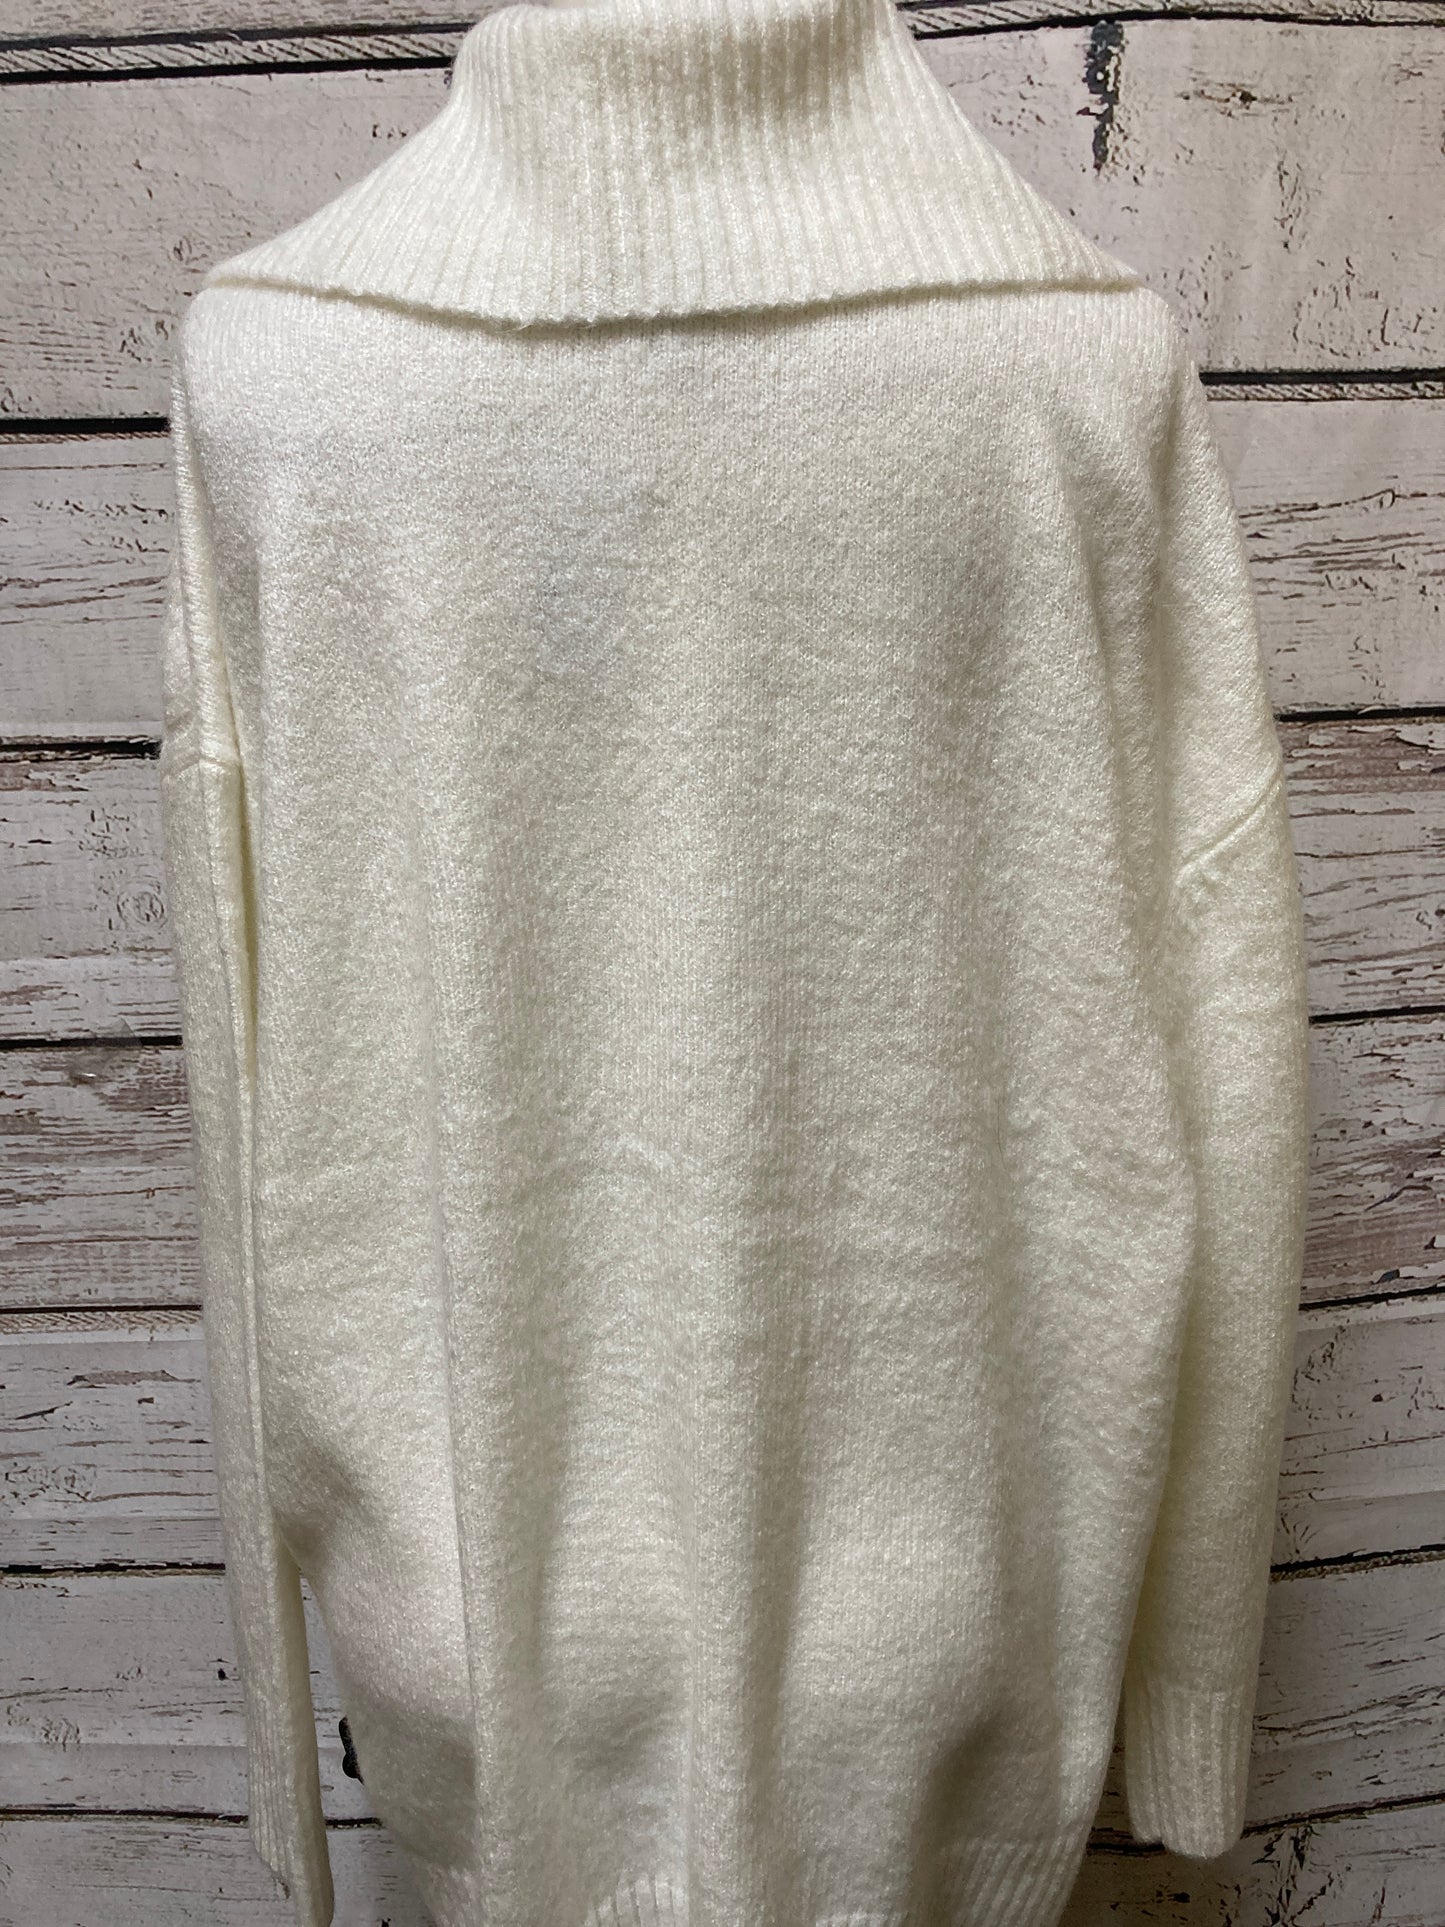 Sweater Cardigan By Cj Banks  Size: 2x